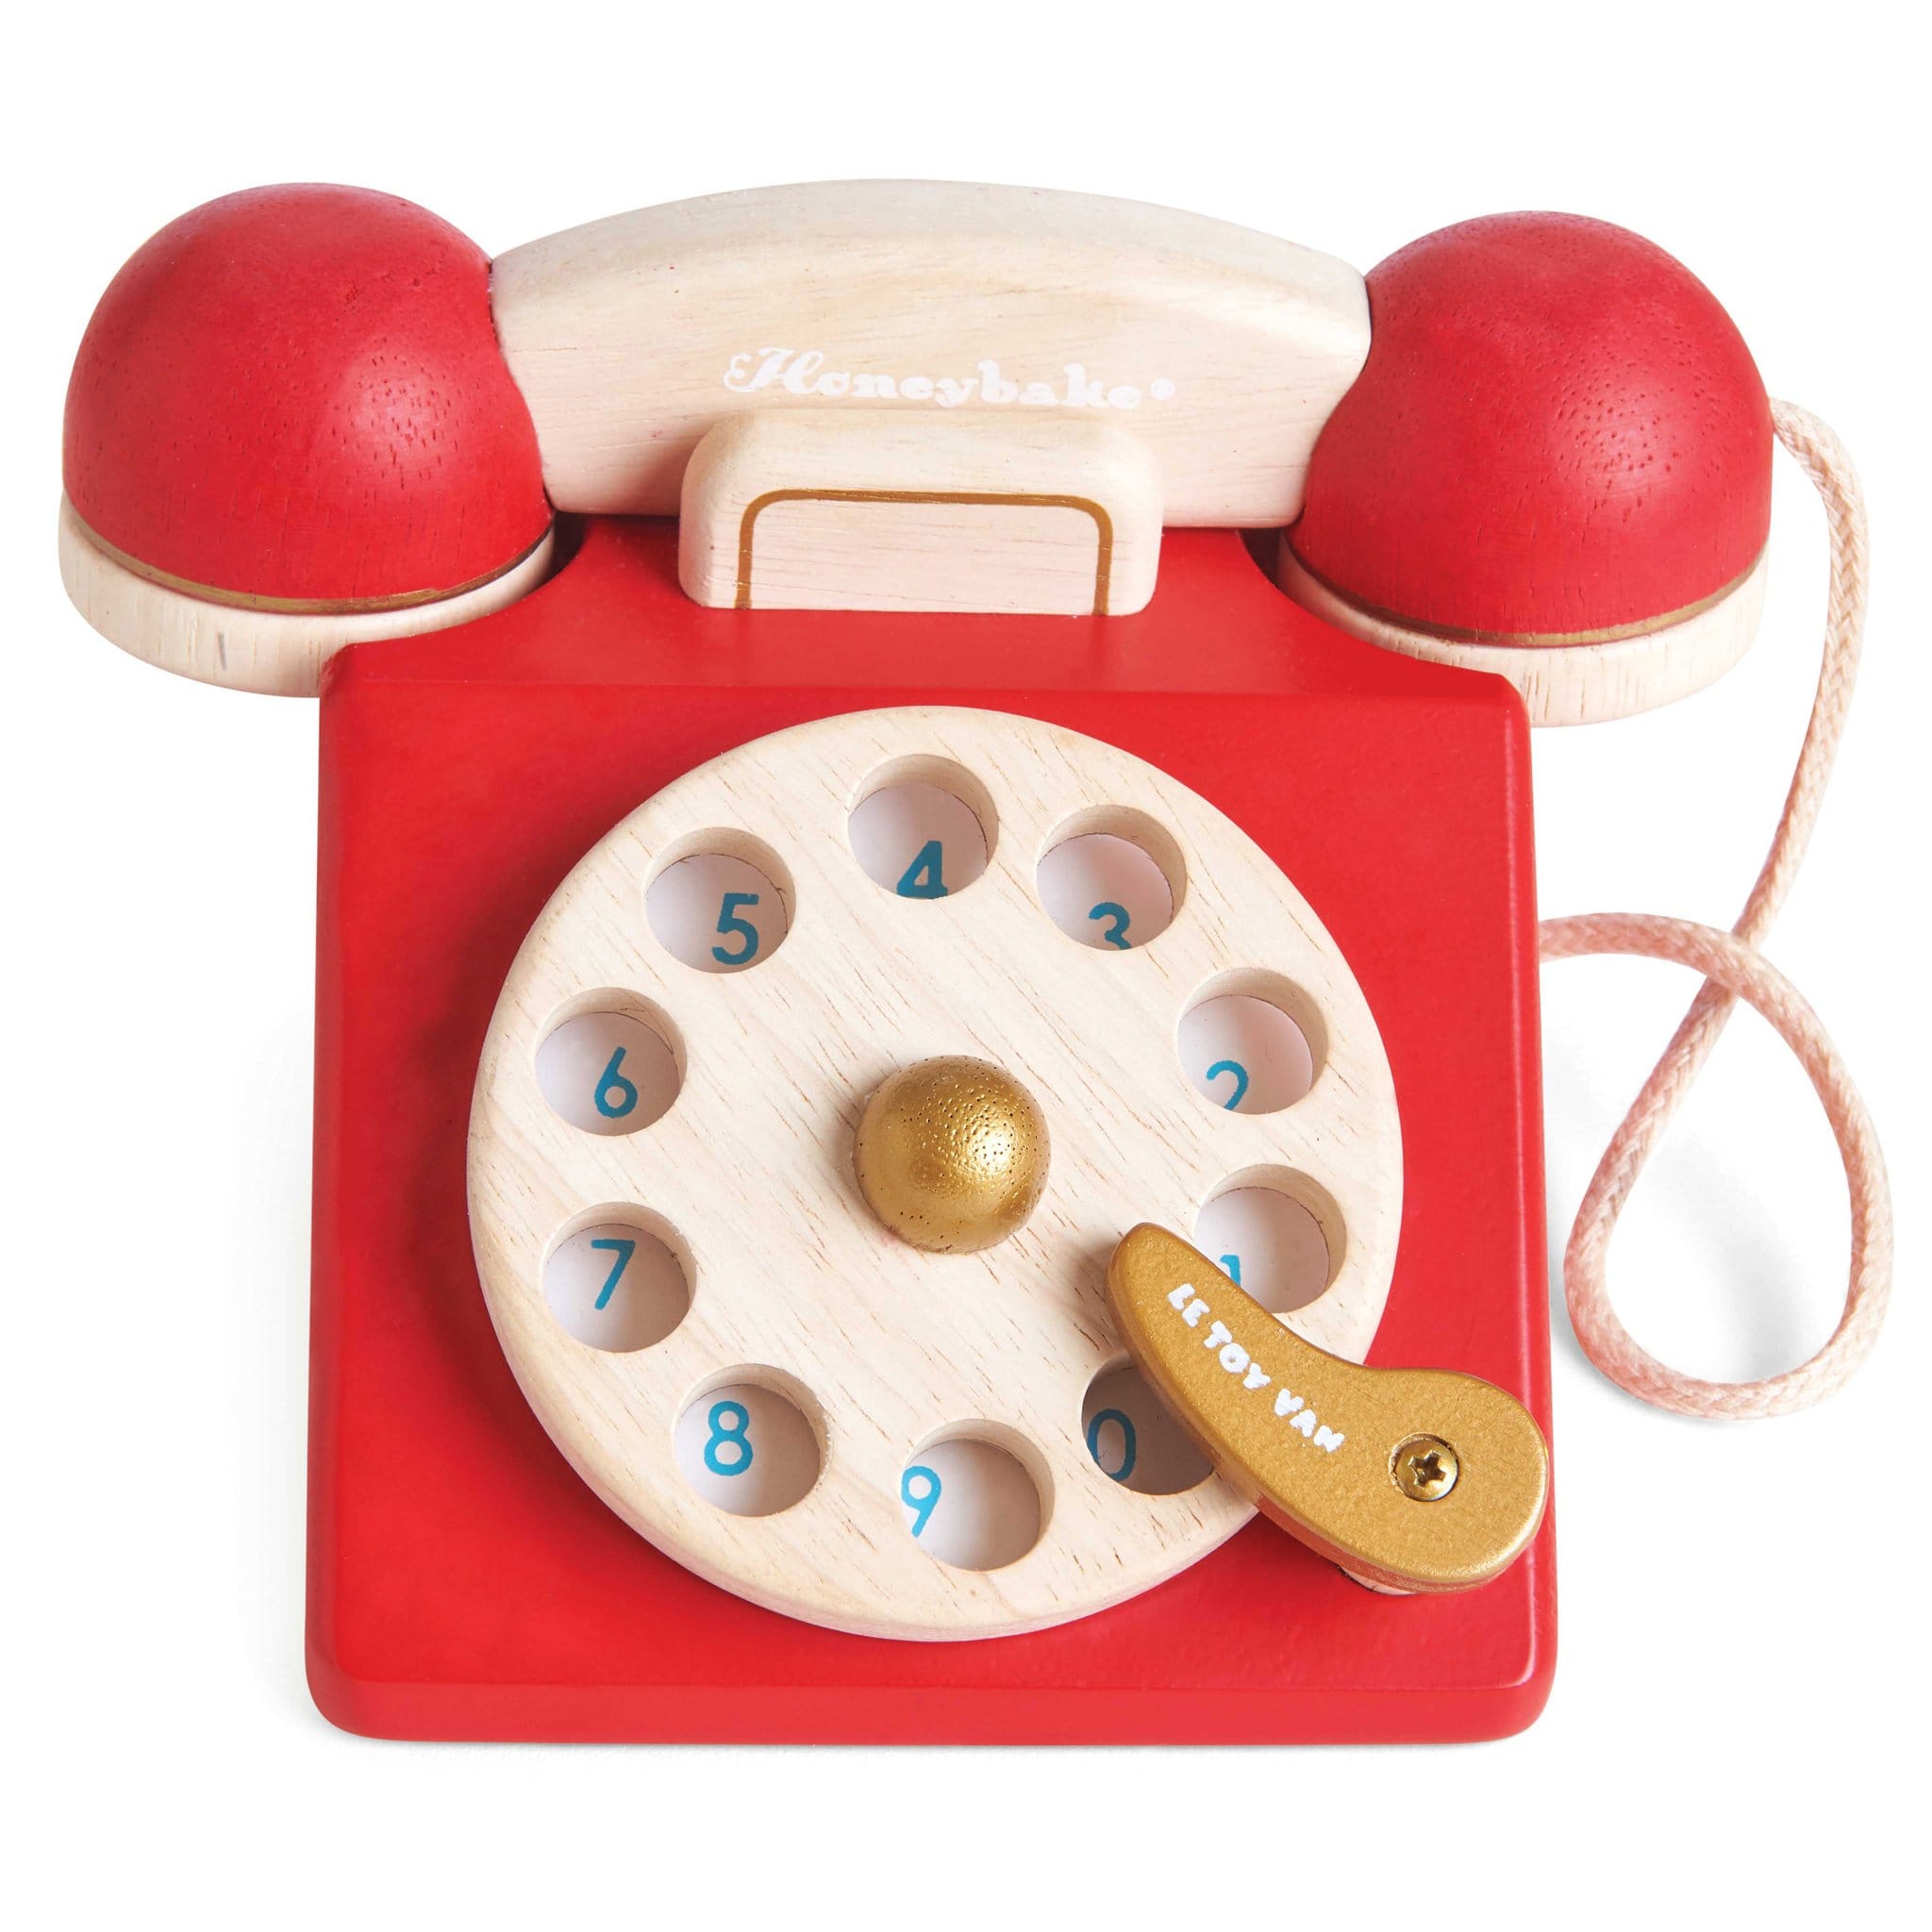 Téléphone jouet vintage -  France